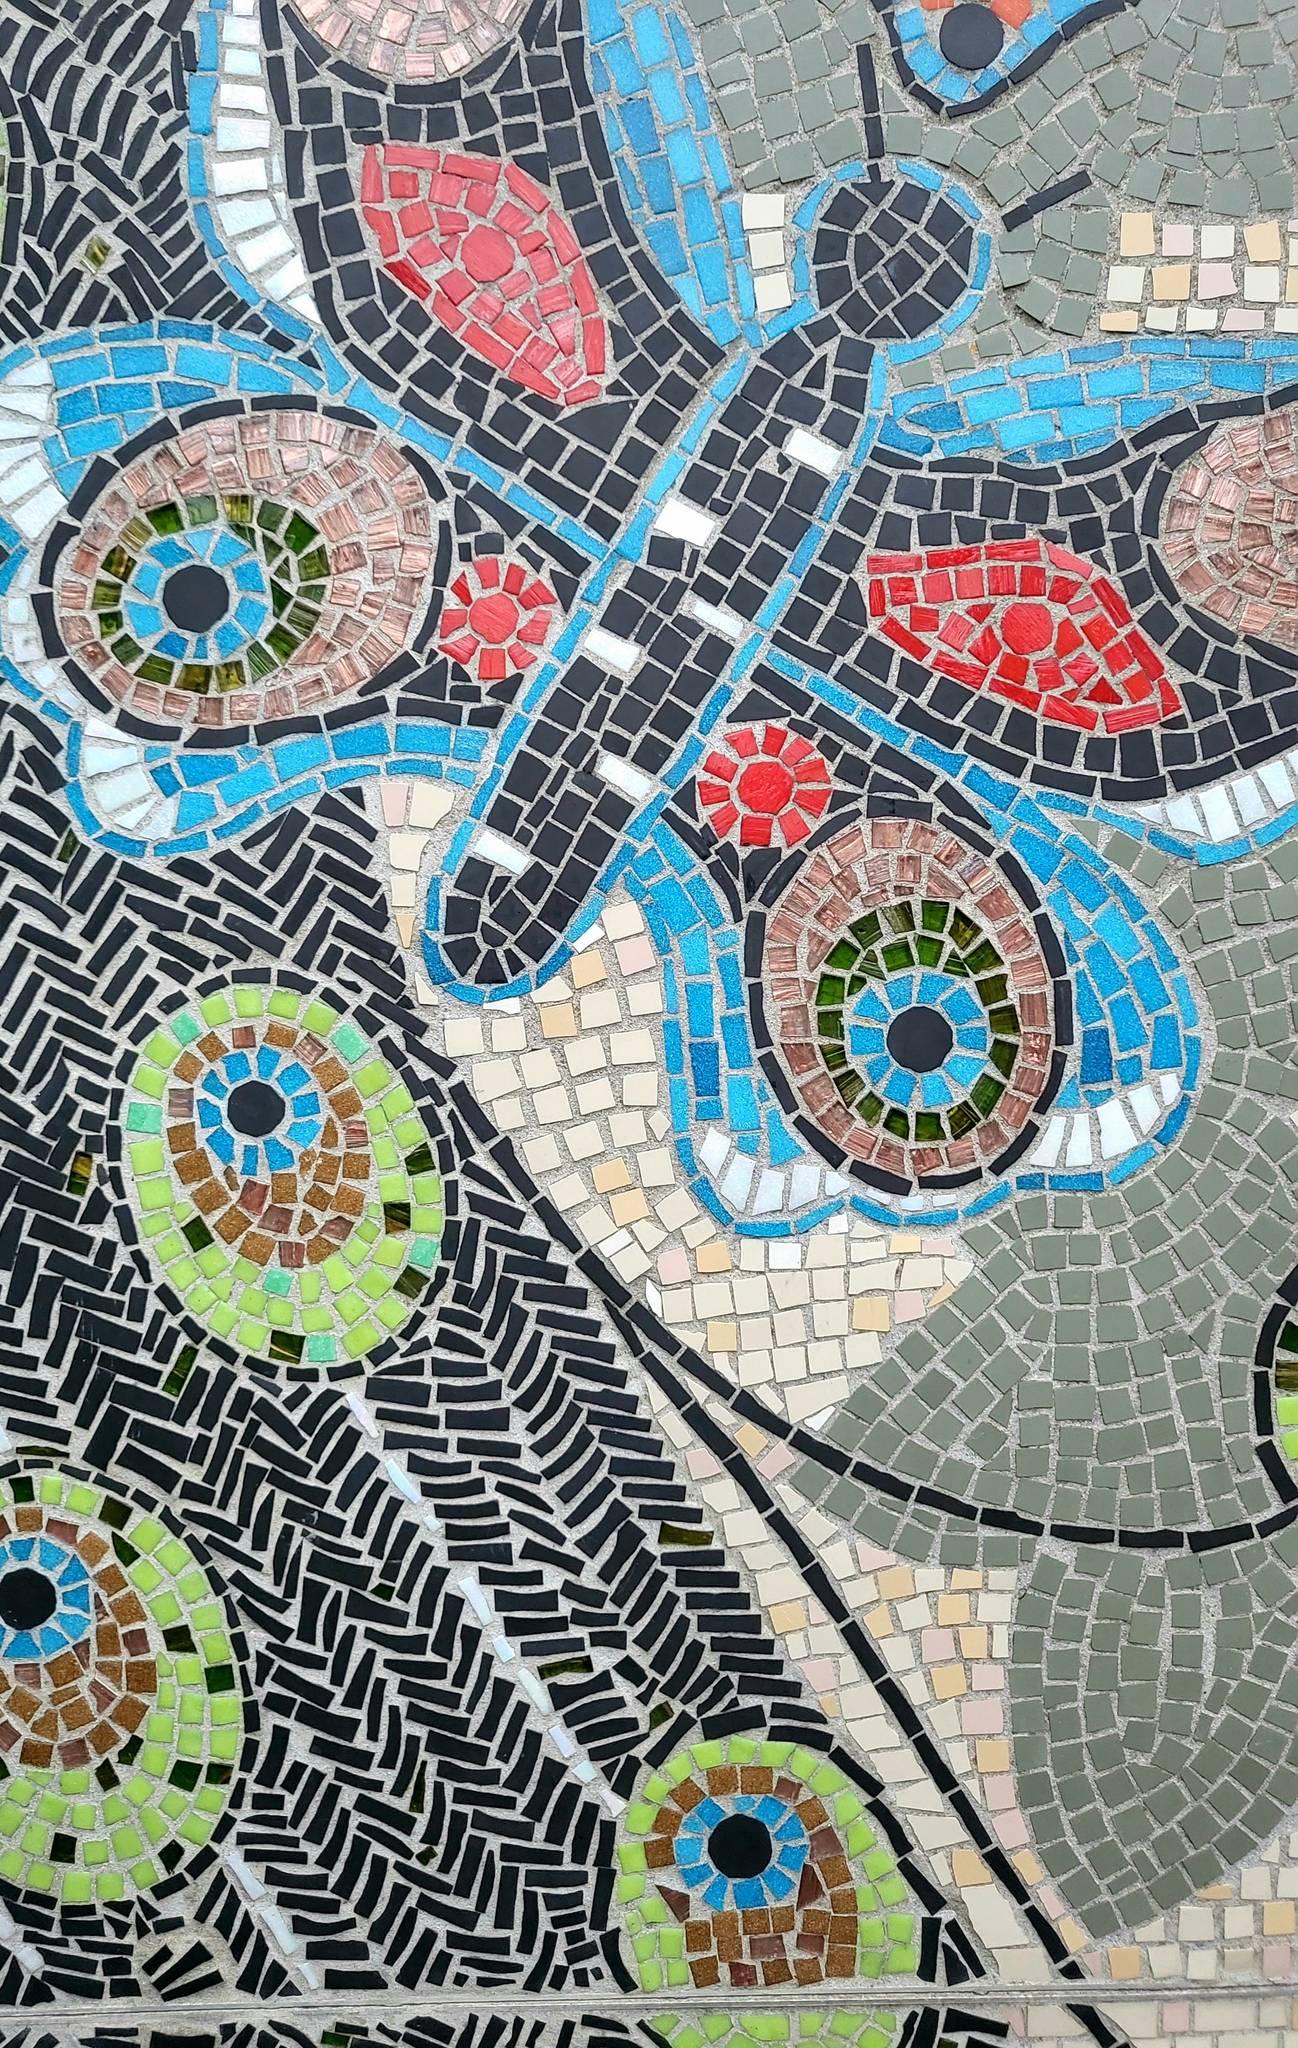 Dot to Dot Arts&mdash;The Somertown Mosaic